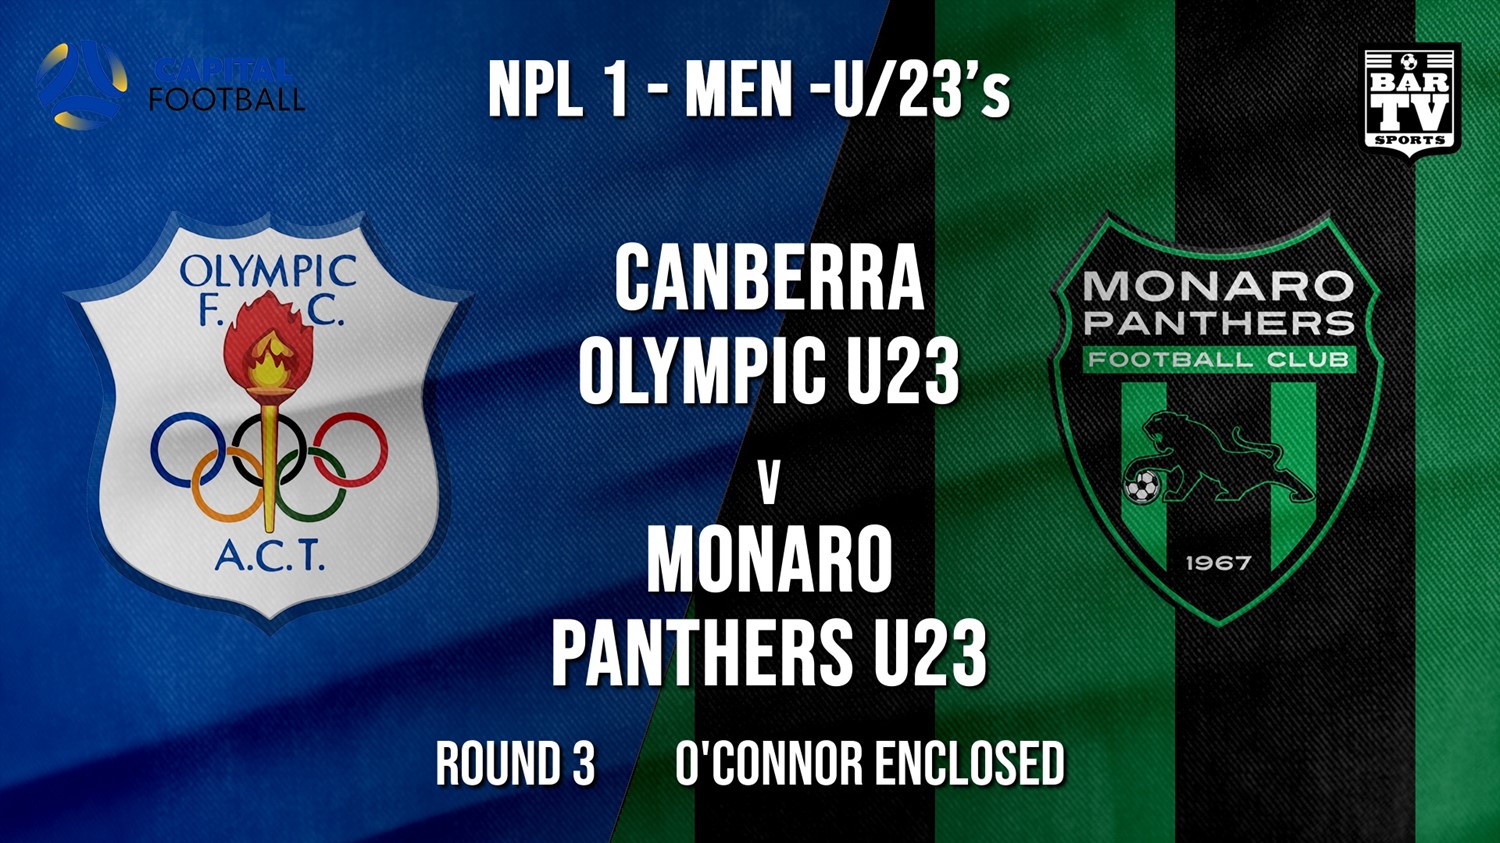 NPL1 Men - U23 - Capital Football  Round 3 - Canberra Olympic U23 v Monaro Panthers U23 Minigame Slate Image